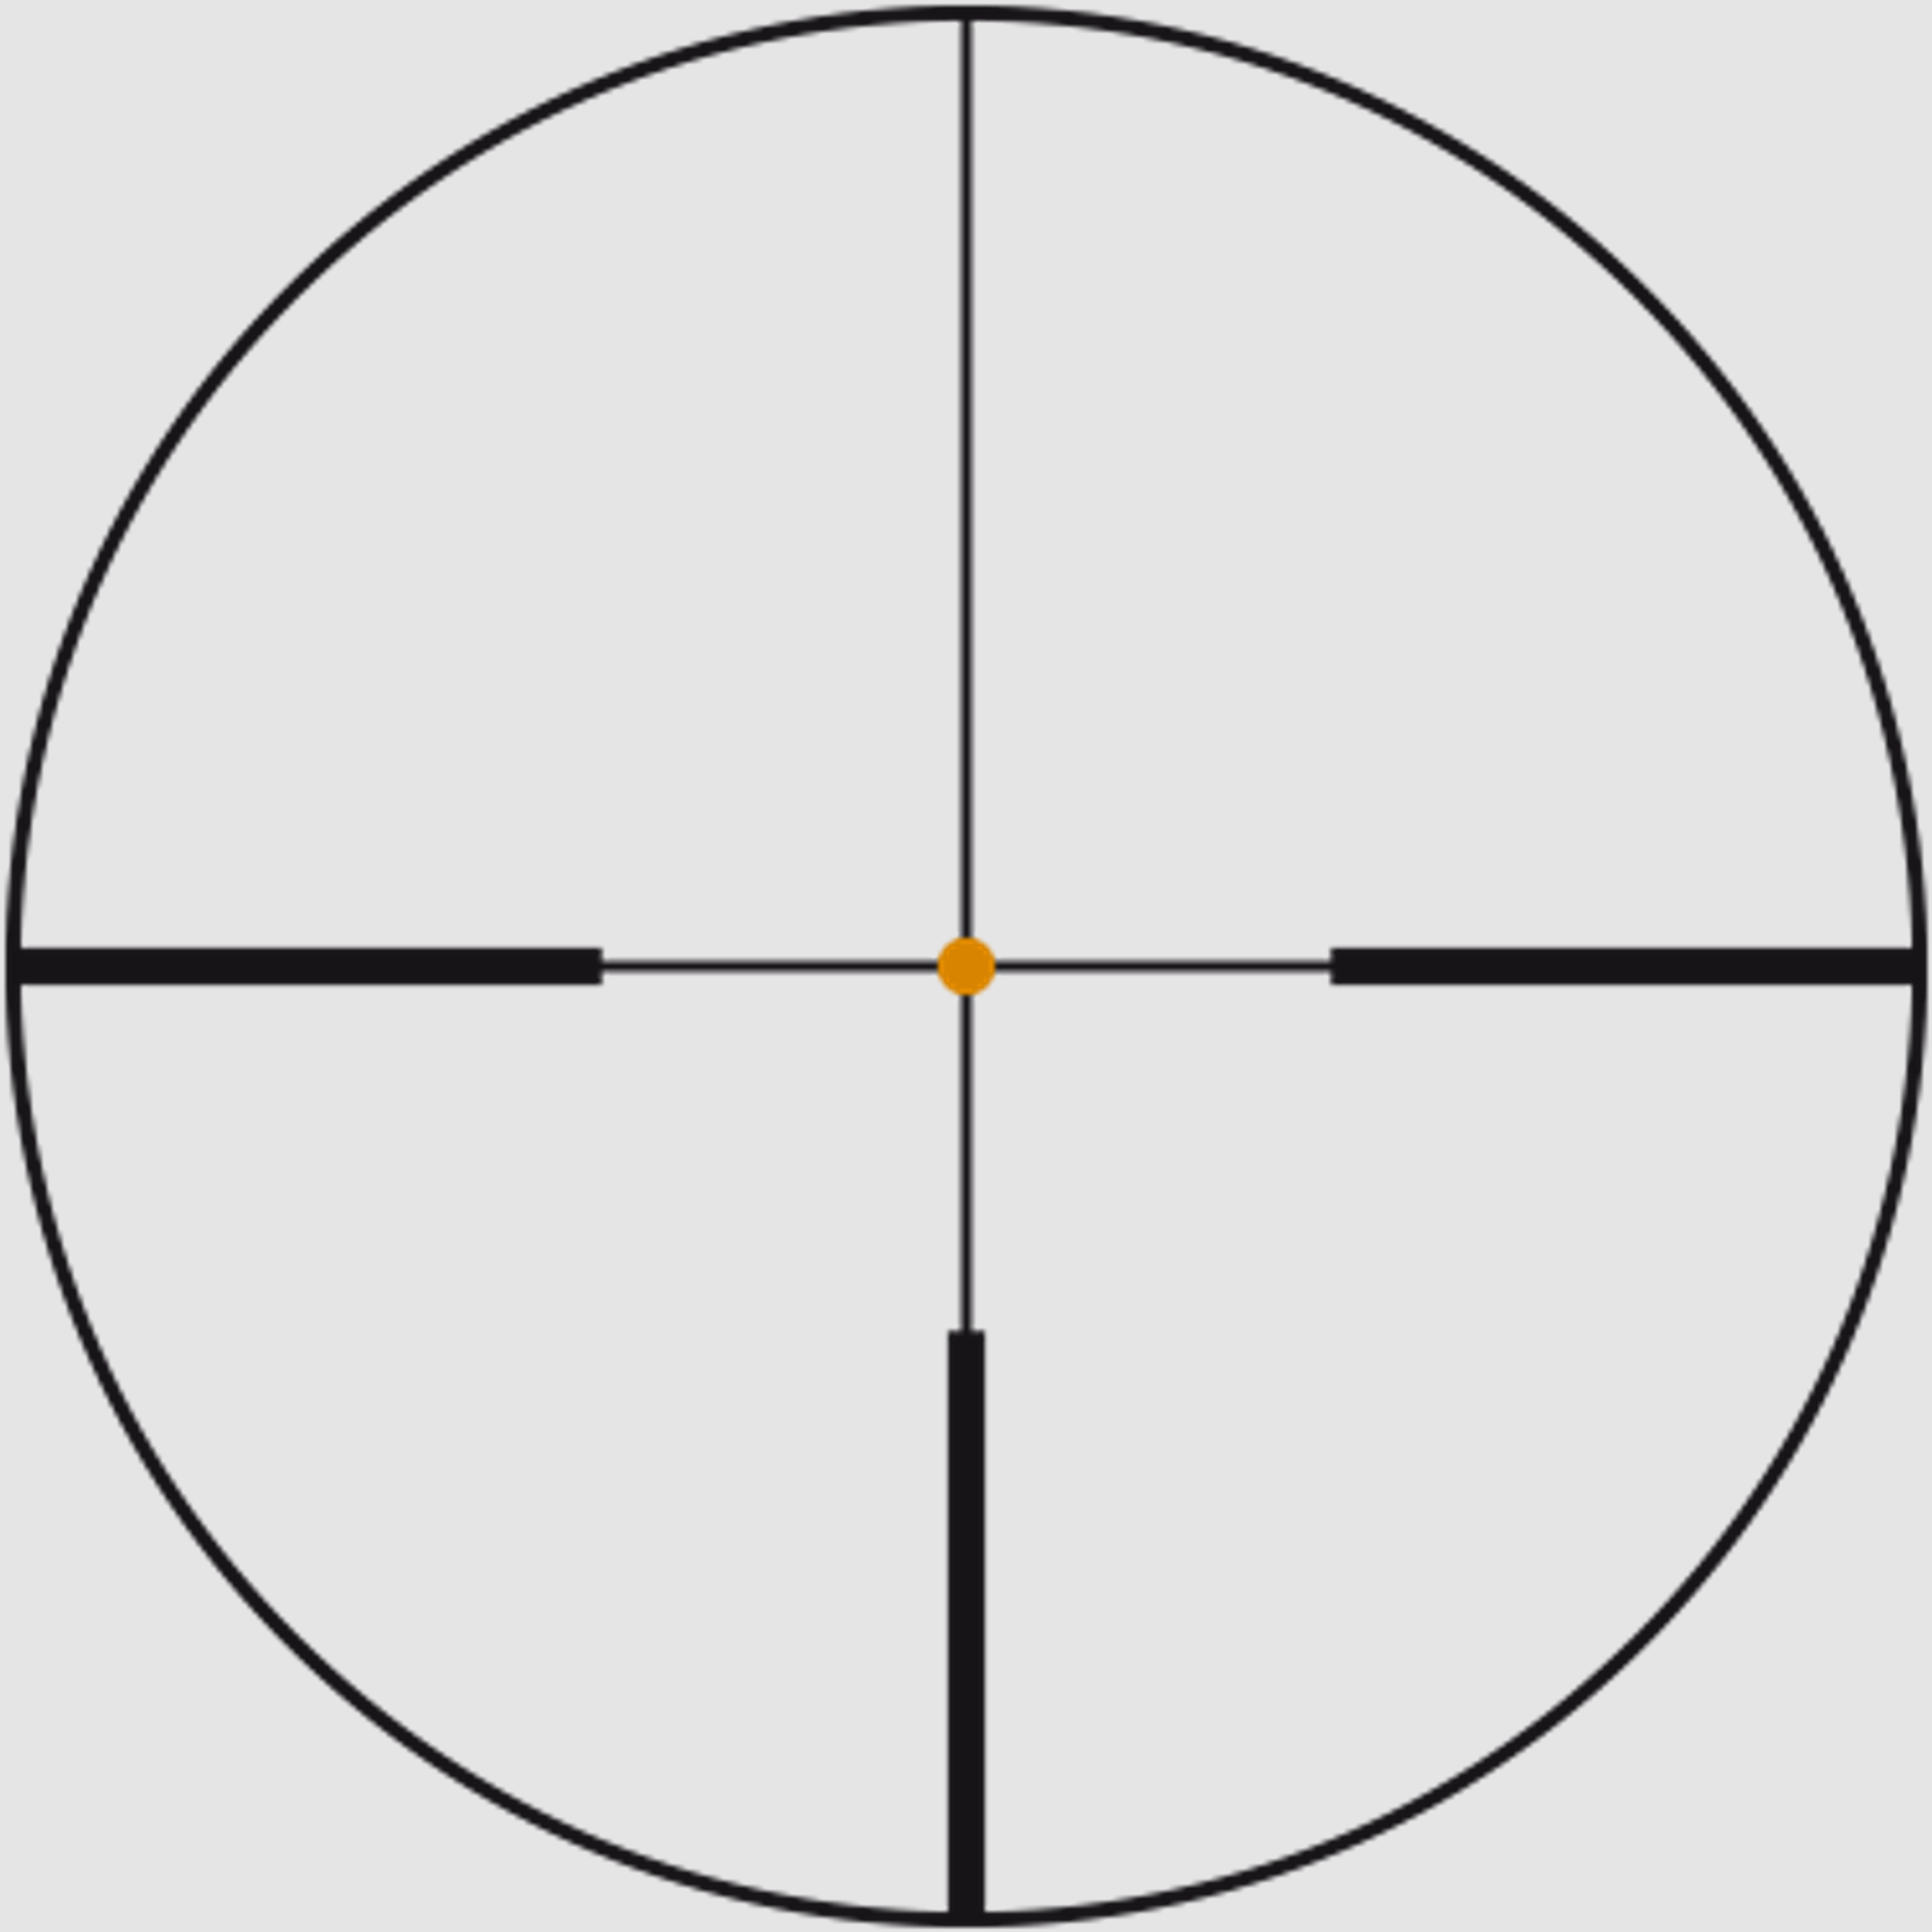 SWAROVSKI Zielfernrohr mit Leuchtabsehen 1,7-10x42 Z6i SR II Abs. 4AI